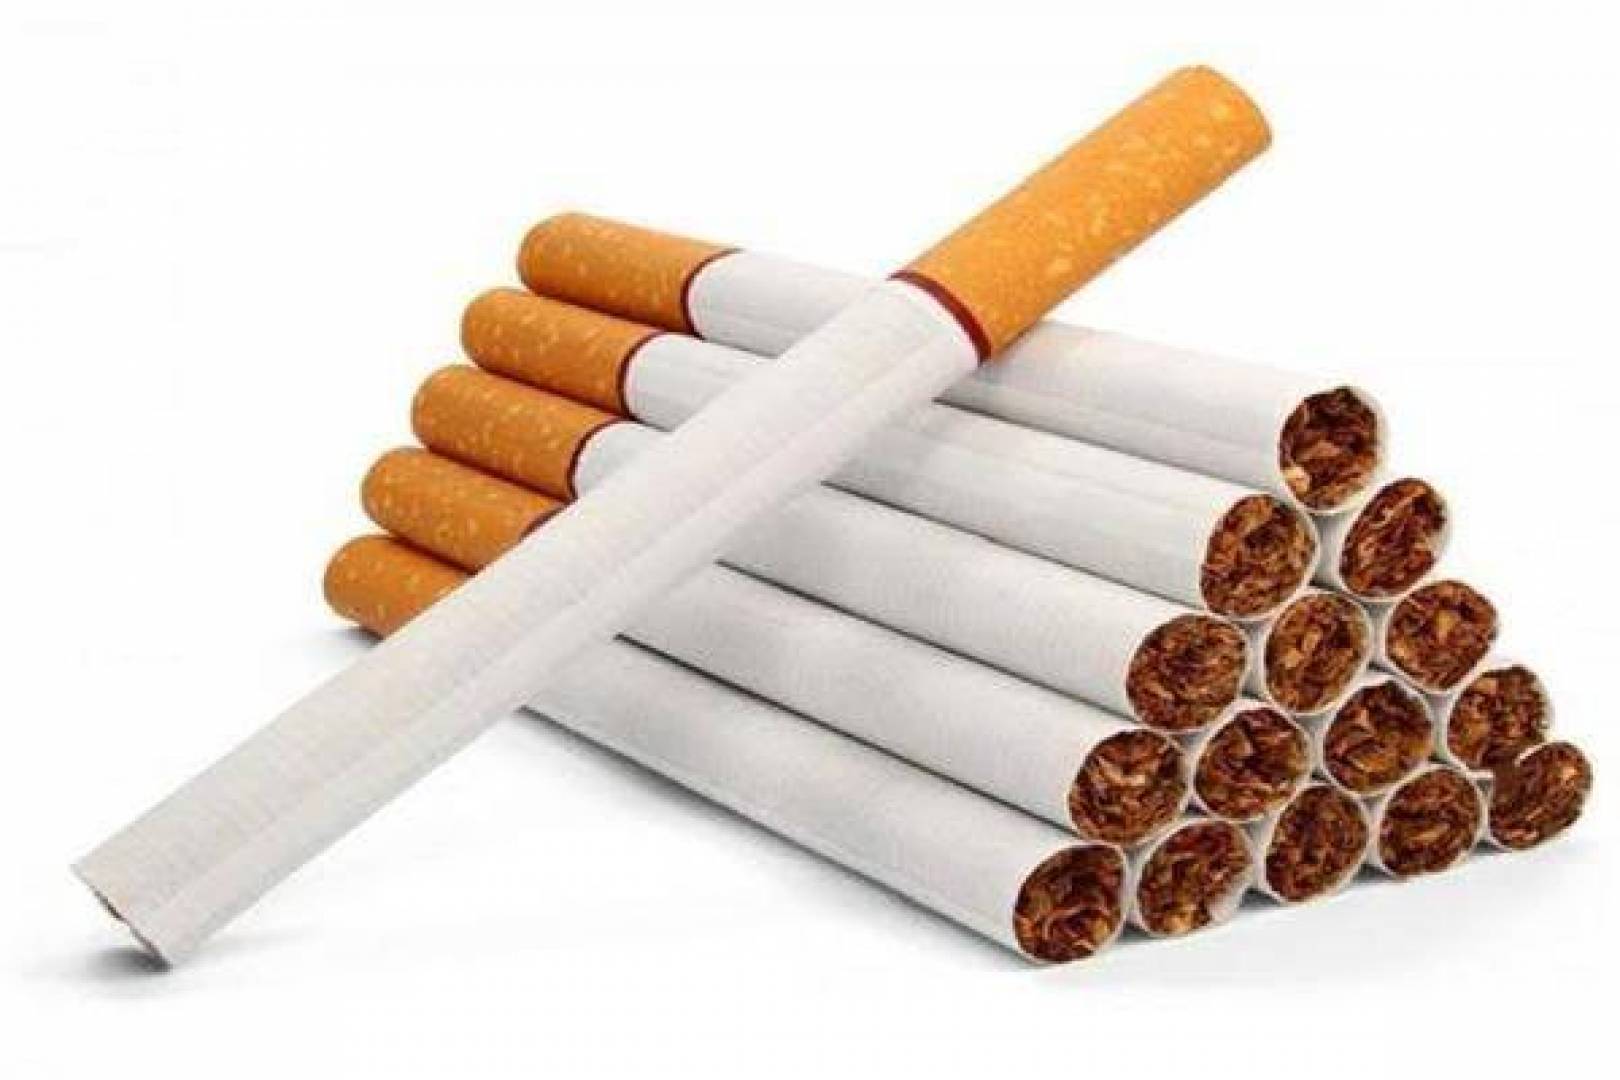 أزمة جديدة فى سوق السجائر